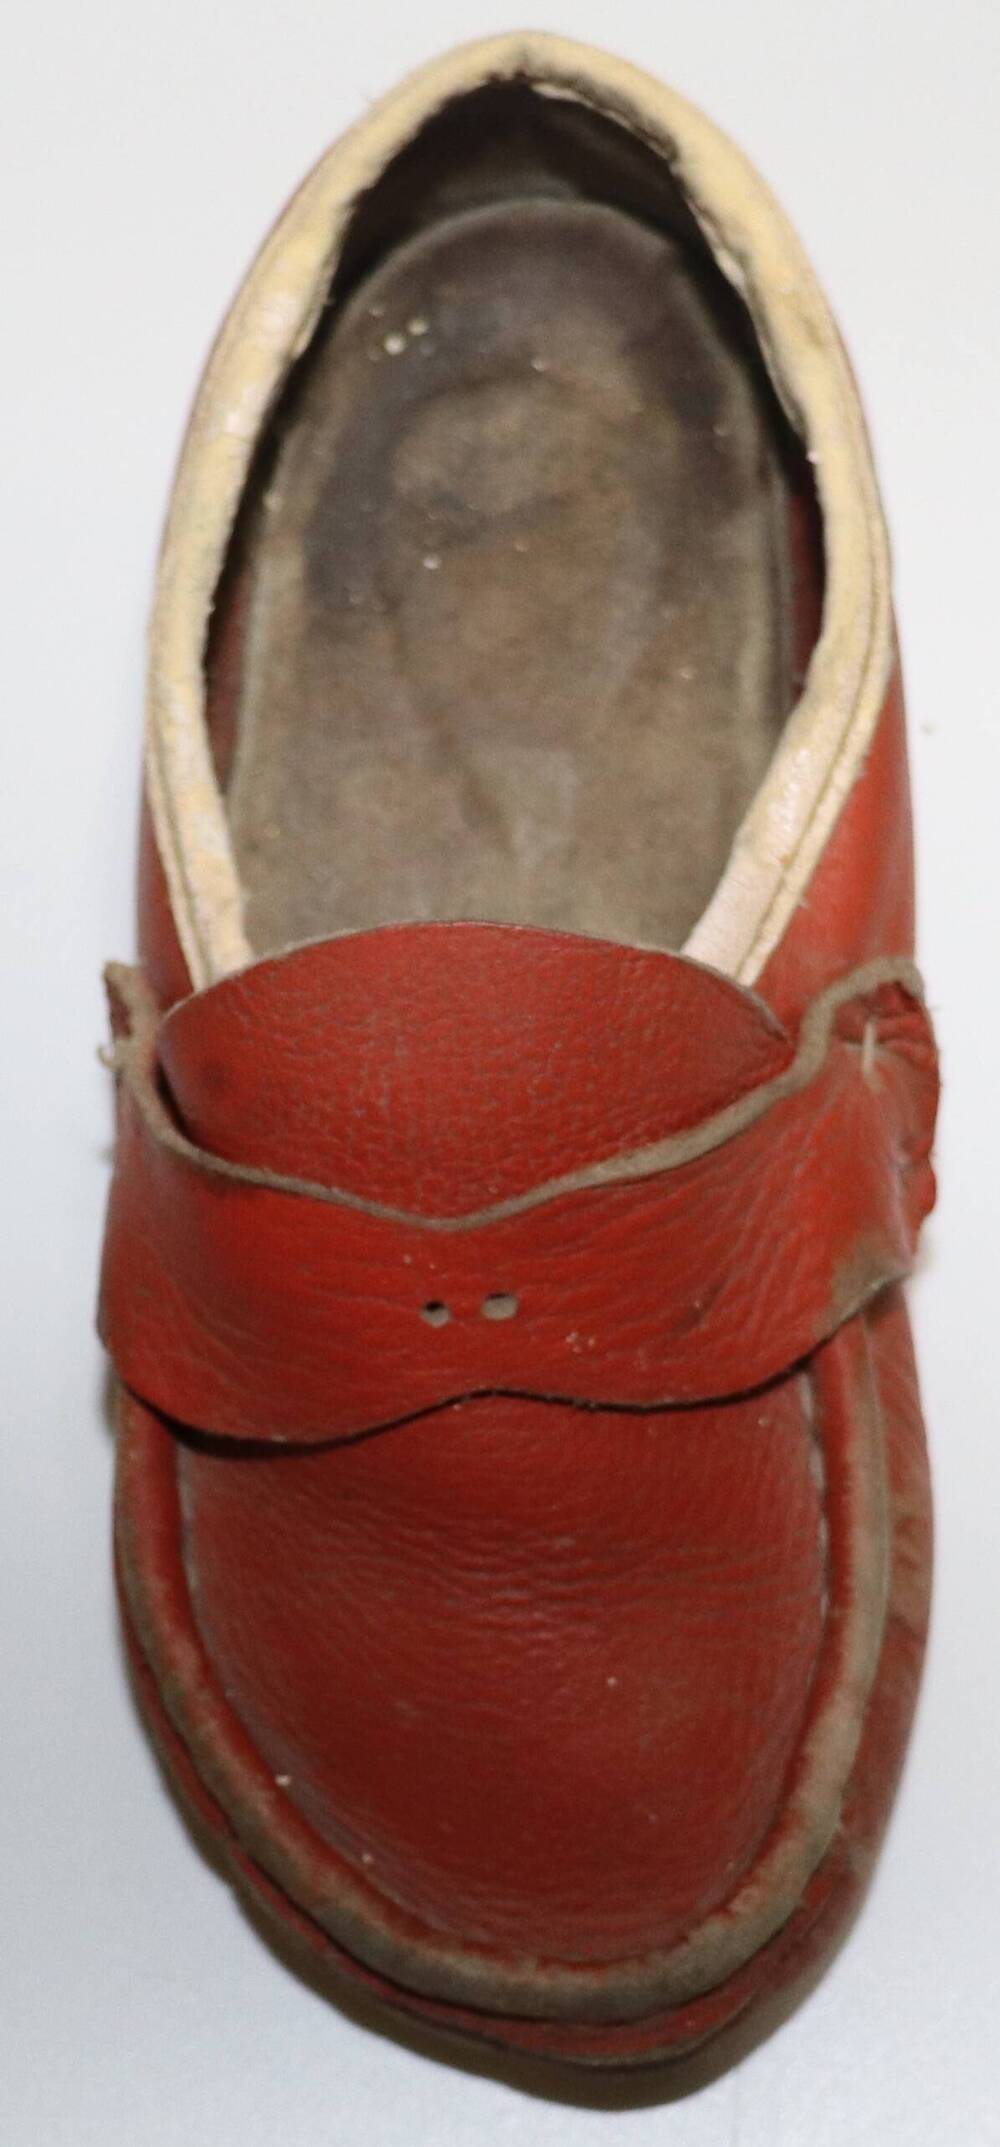 Туфля из кожзама красного цвета с белой окантовкой. Часть пары, правая.